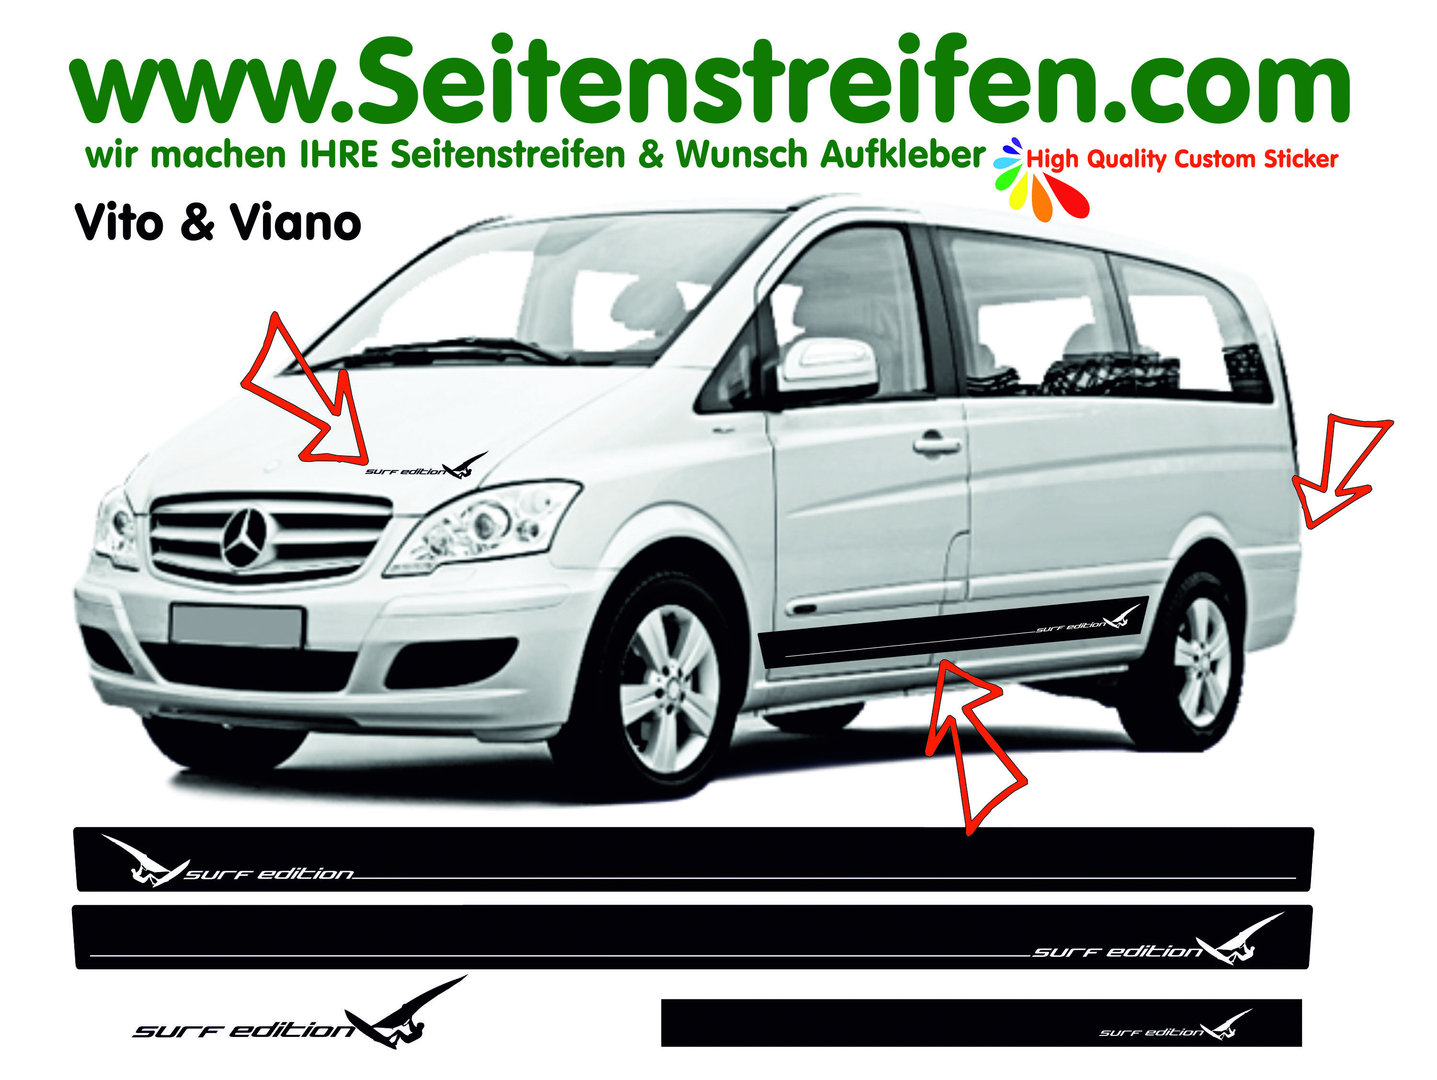 Mercedes Benz Vito & Viano Surf Edition Seitenstreifen Aufkleber Komplett Set N°.: 7674